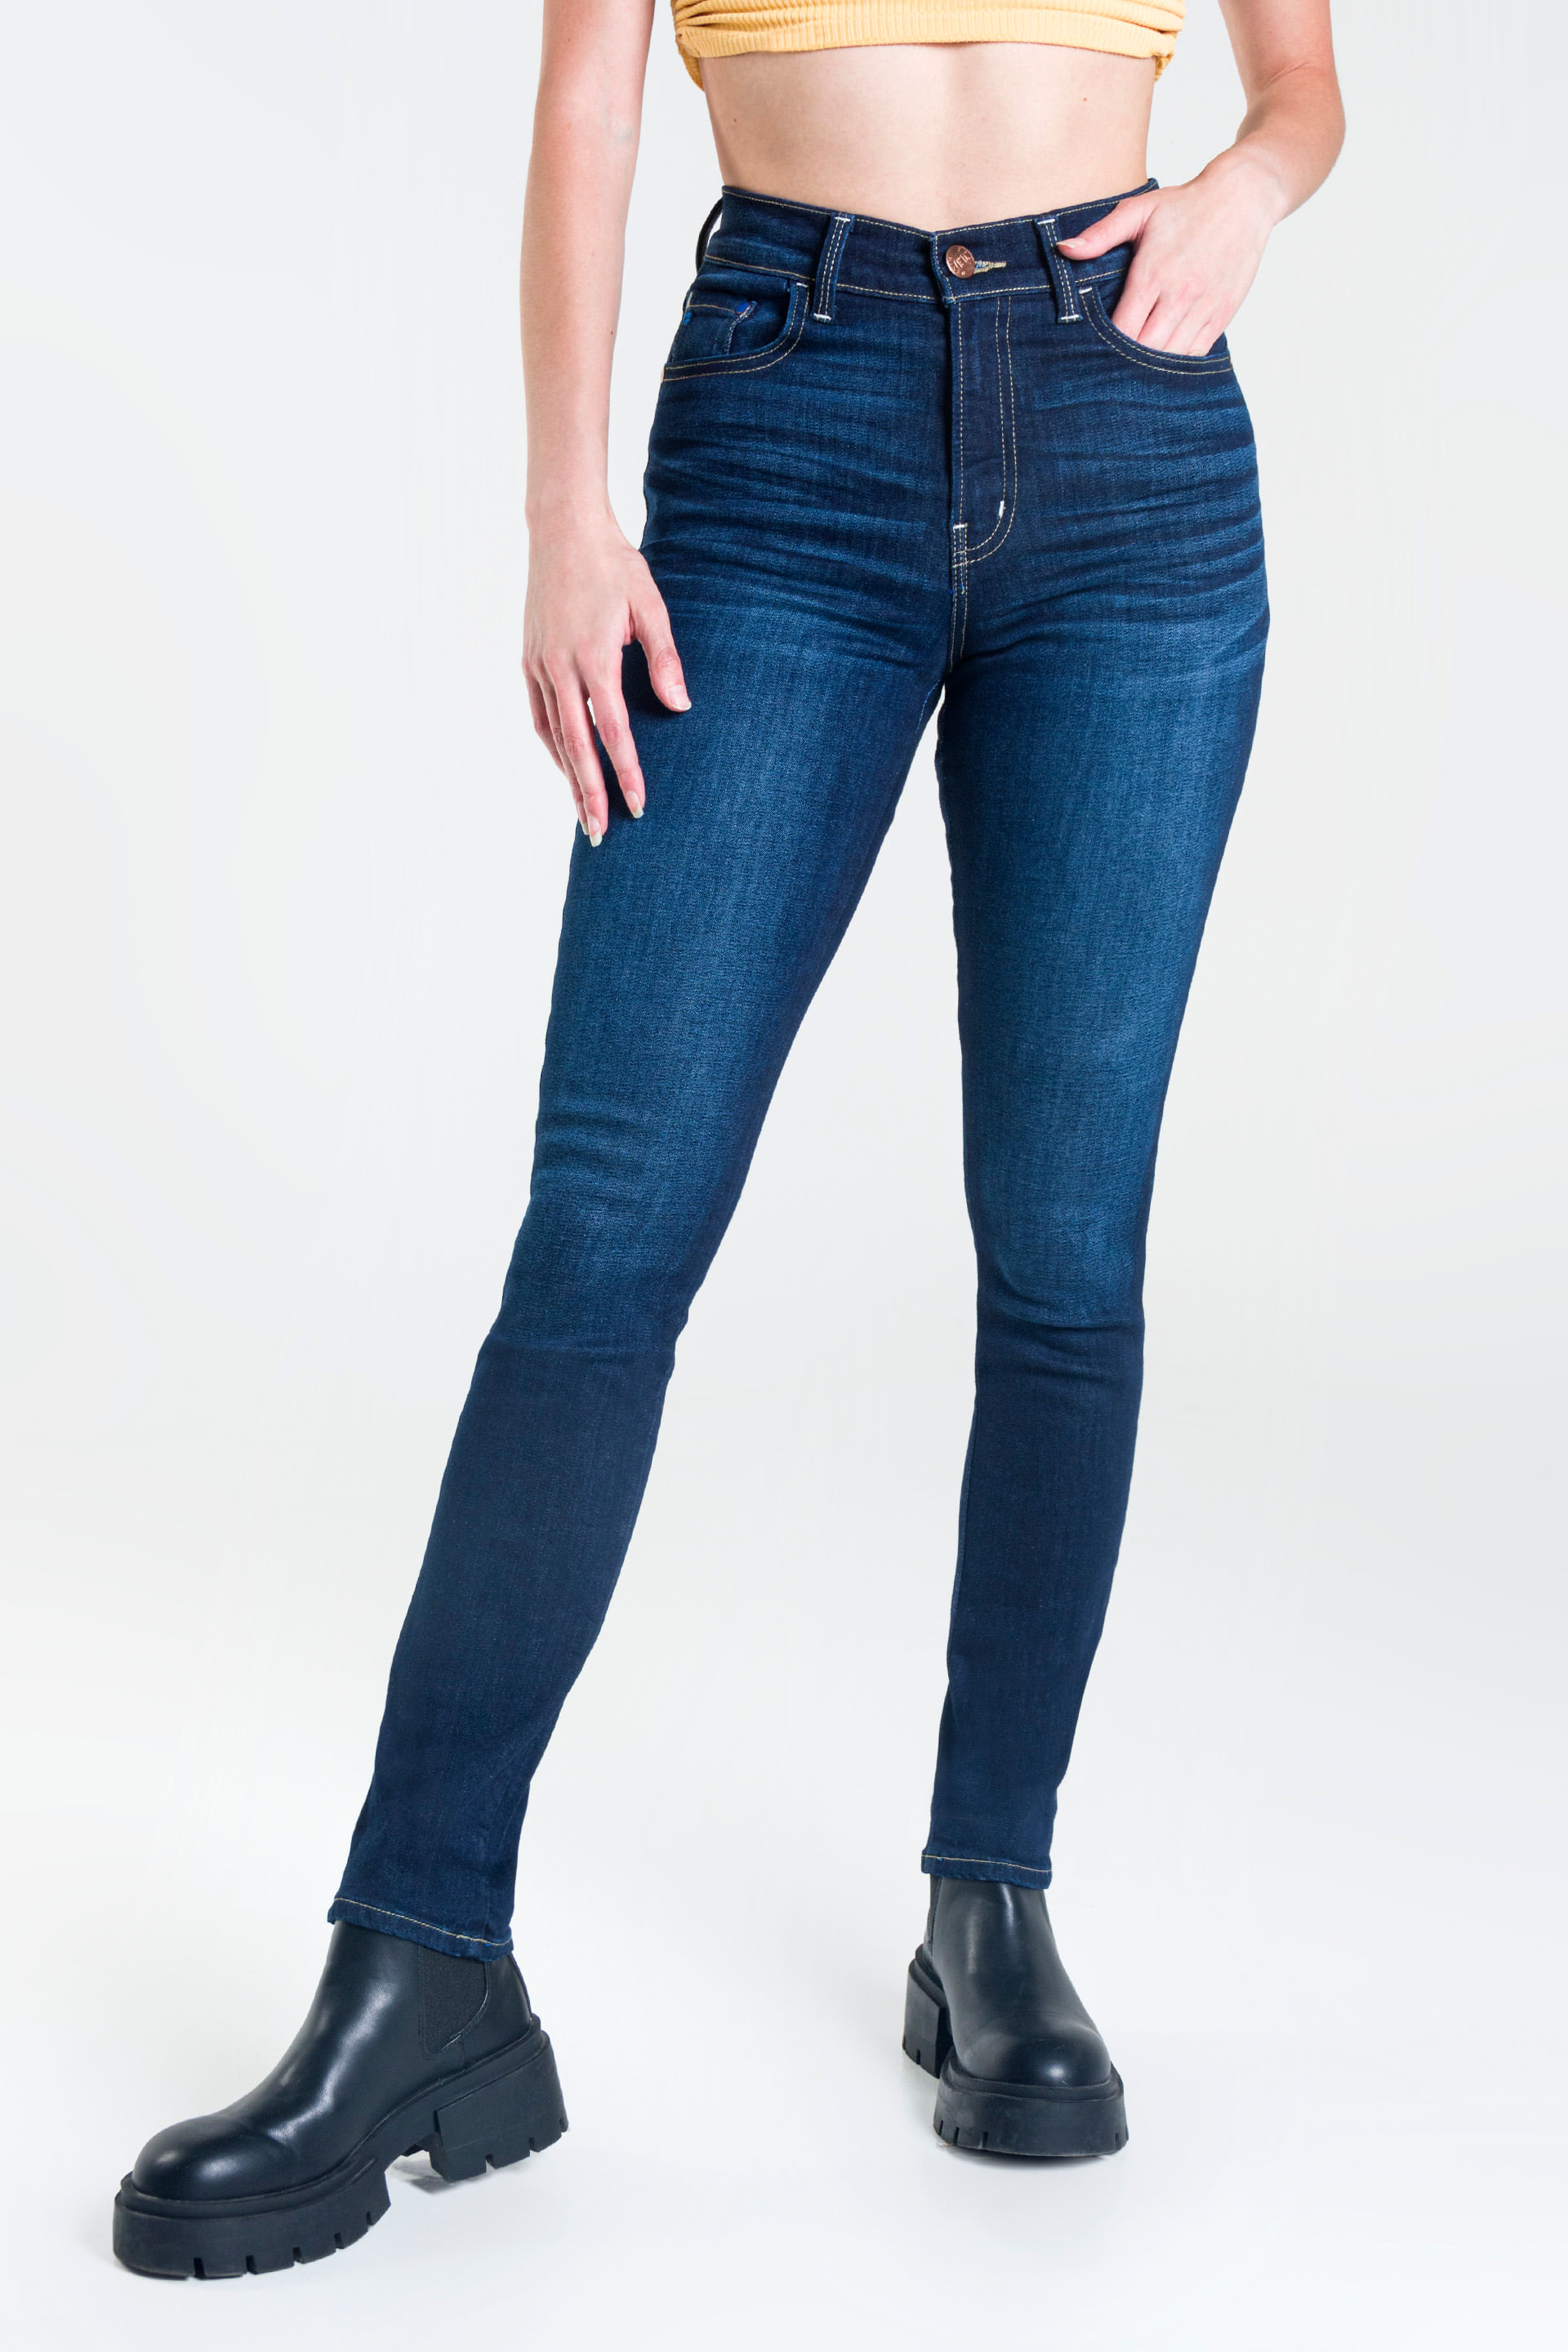 Jeans Slim Oggi - Passion para Mujer Mezclilla Azul Oscuro 2222110